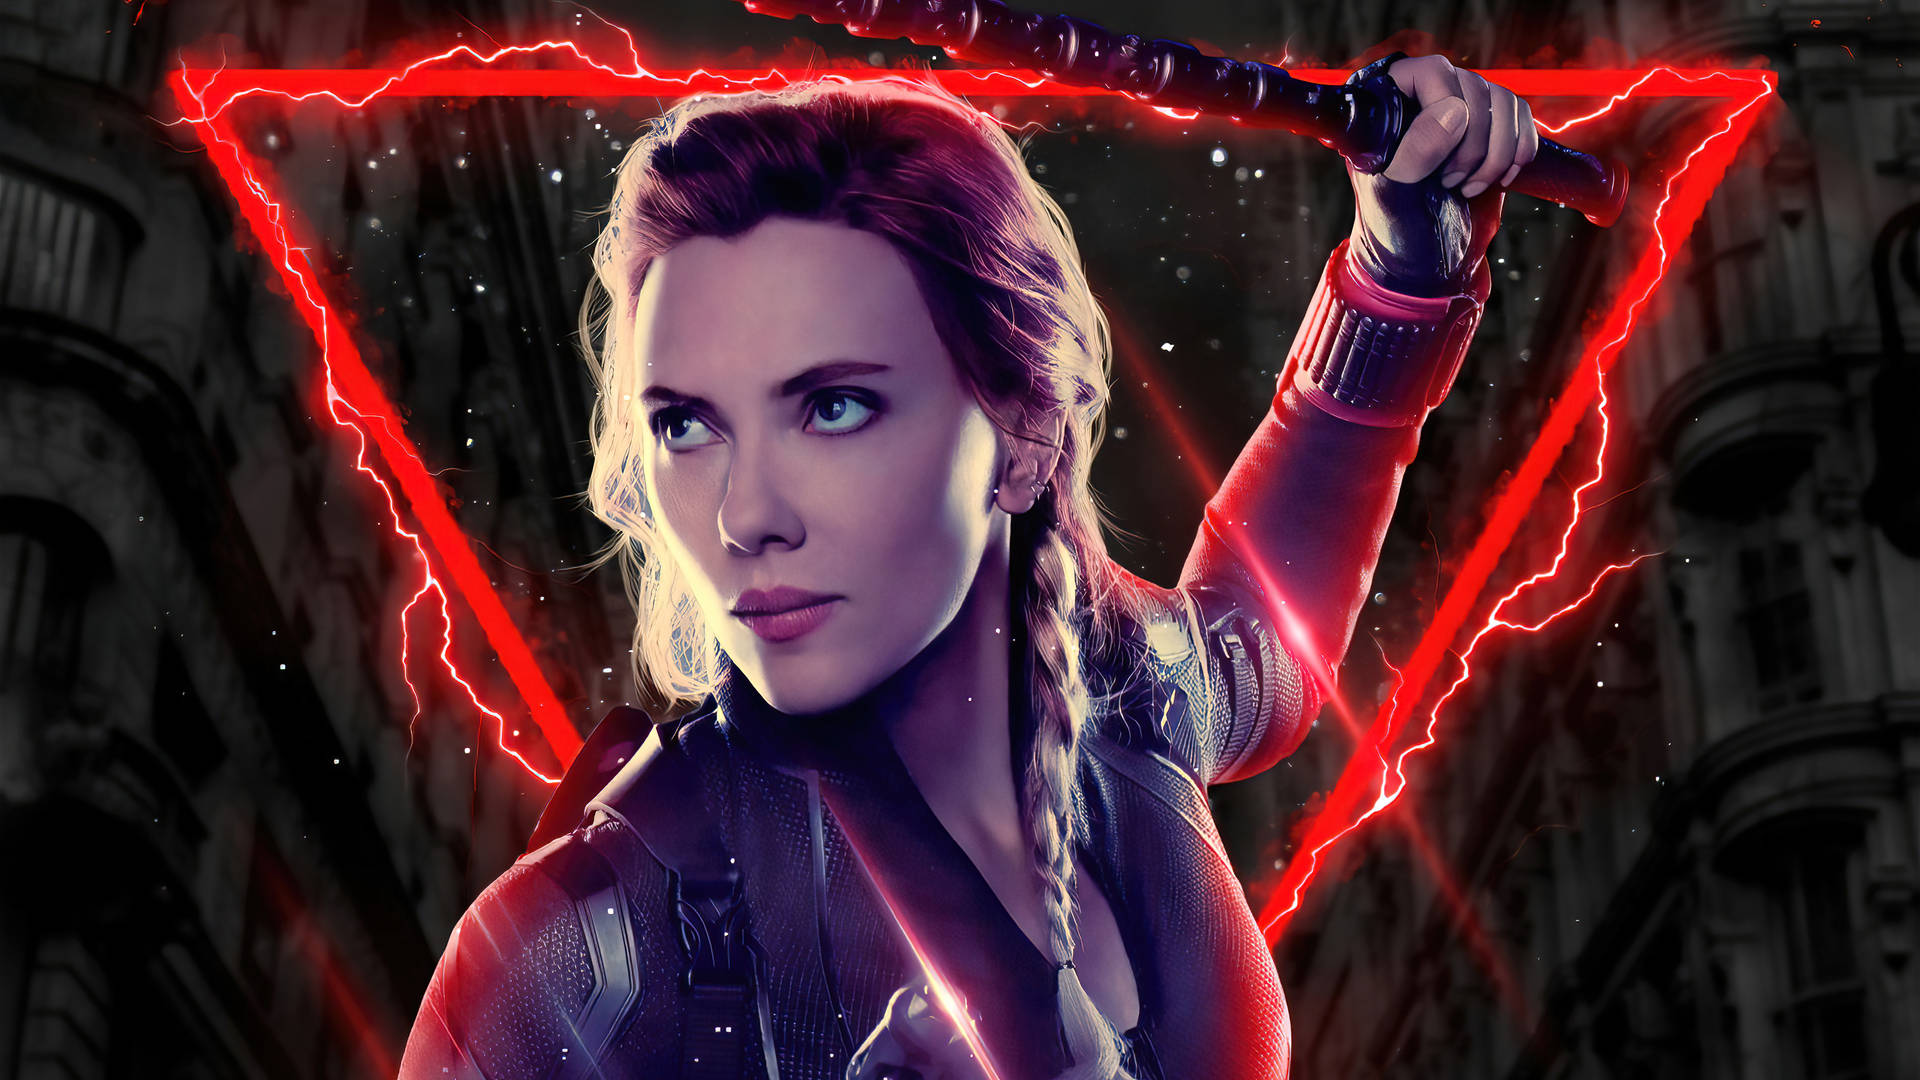 Batons Of Scarlett Johansson As Black Widow Wallpaper